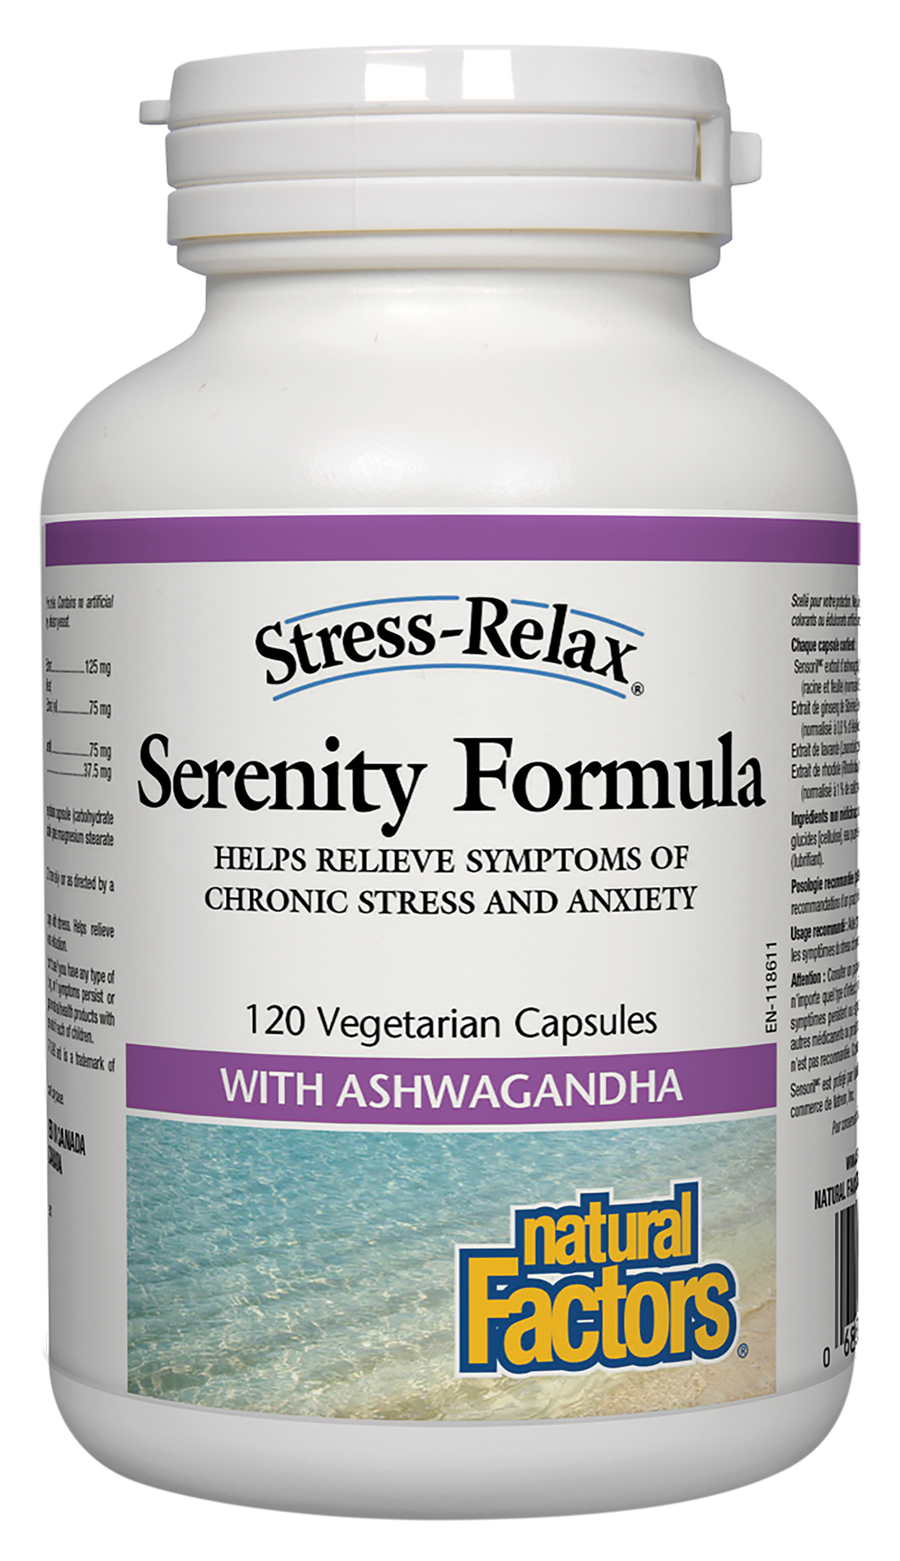 Natural Factors Serenity Formula Stress-Relax 125 mg Sensoril™ ashwagandha extract 120 Veg. Capsules